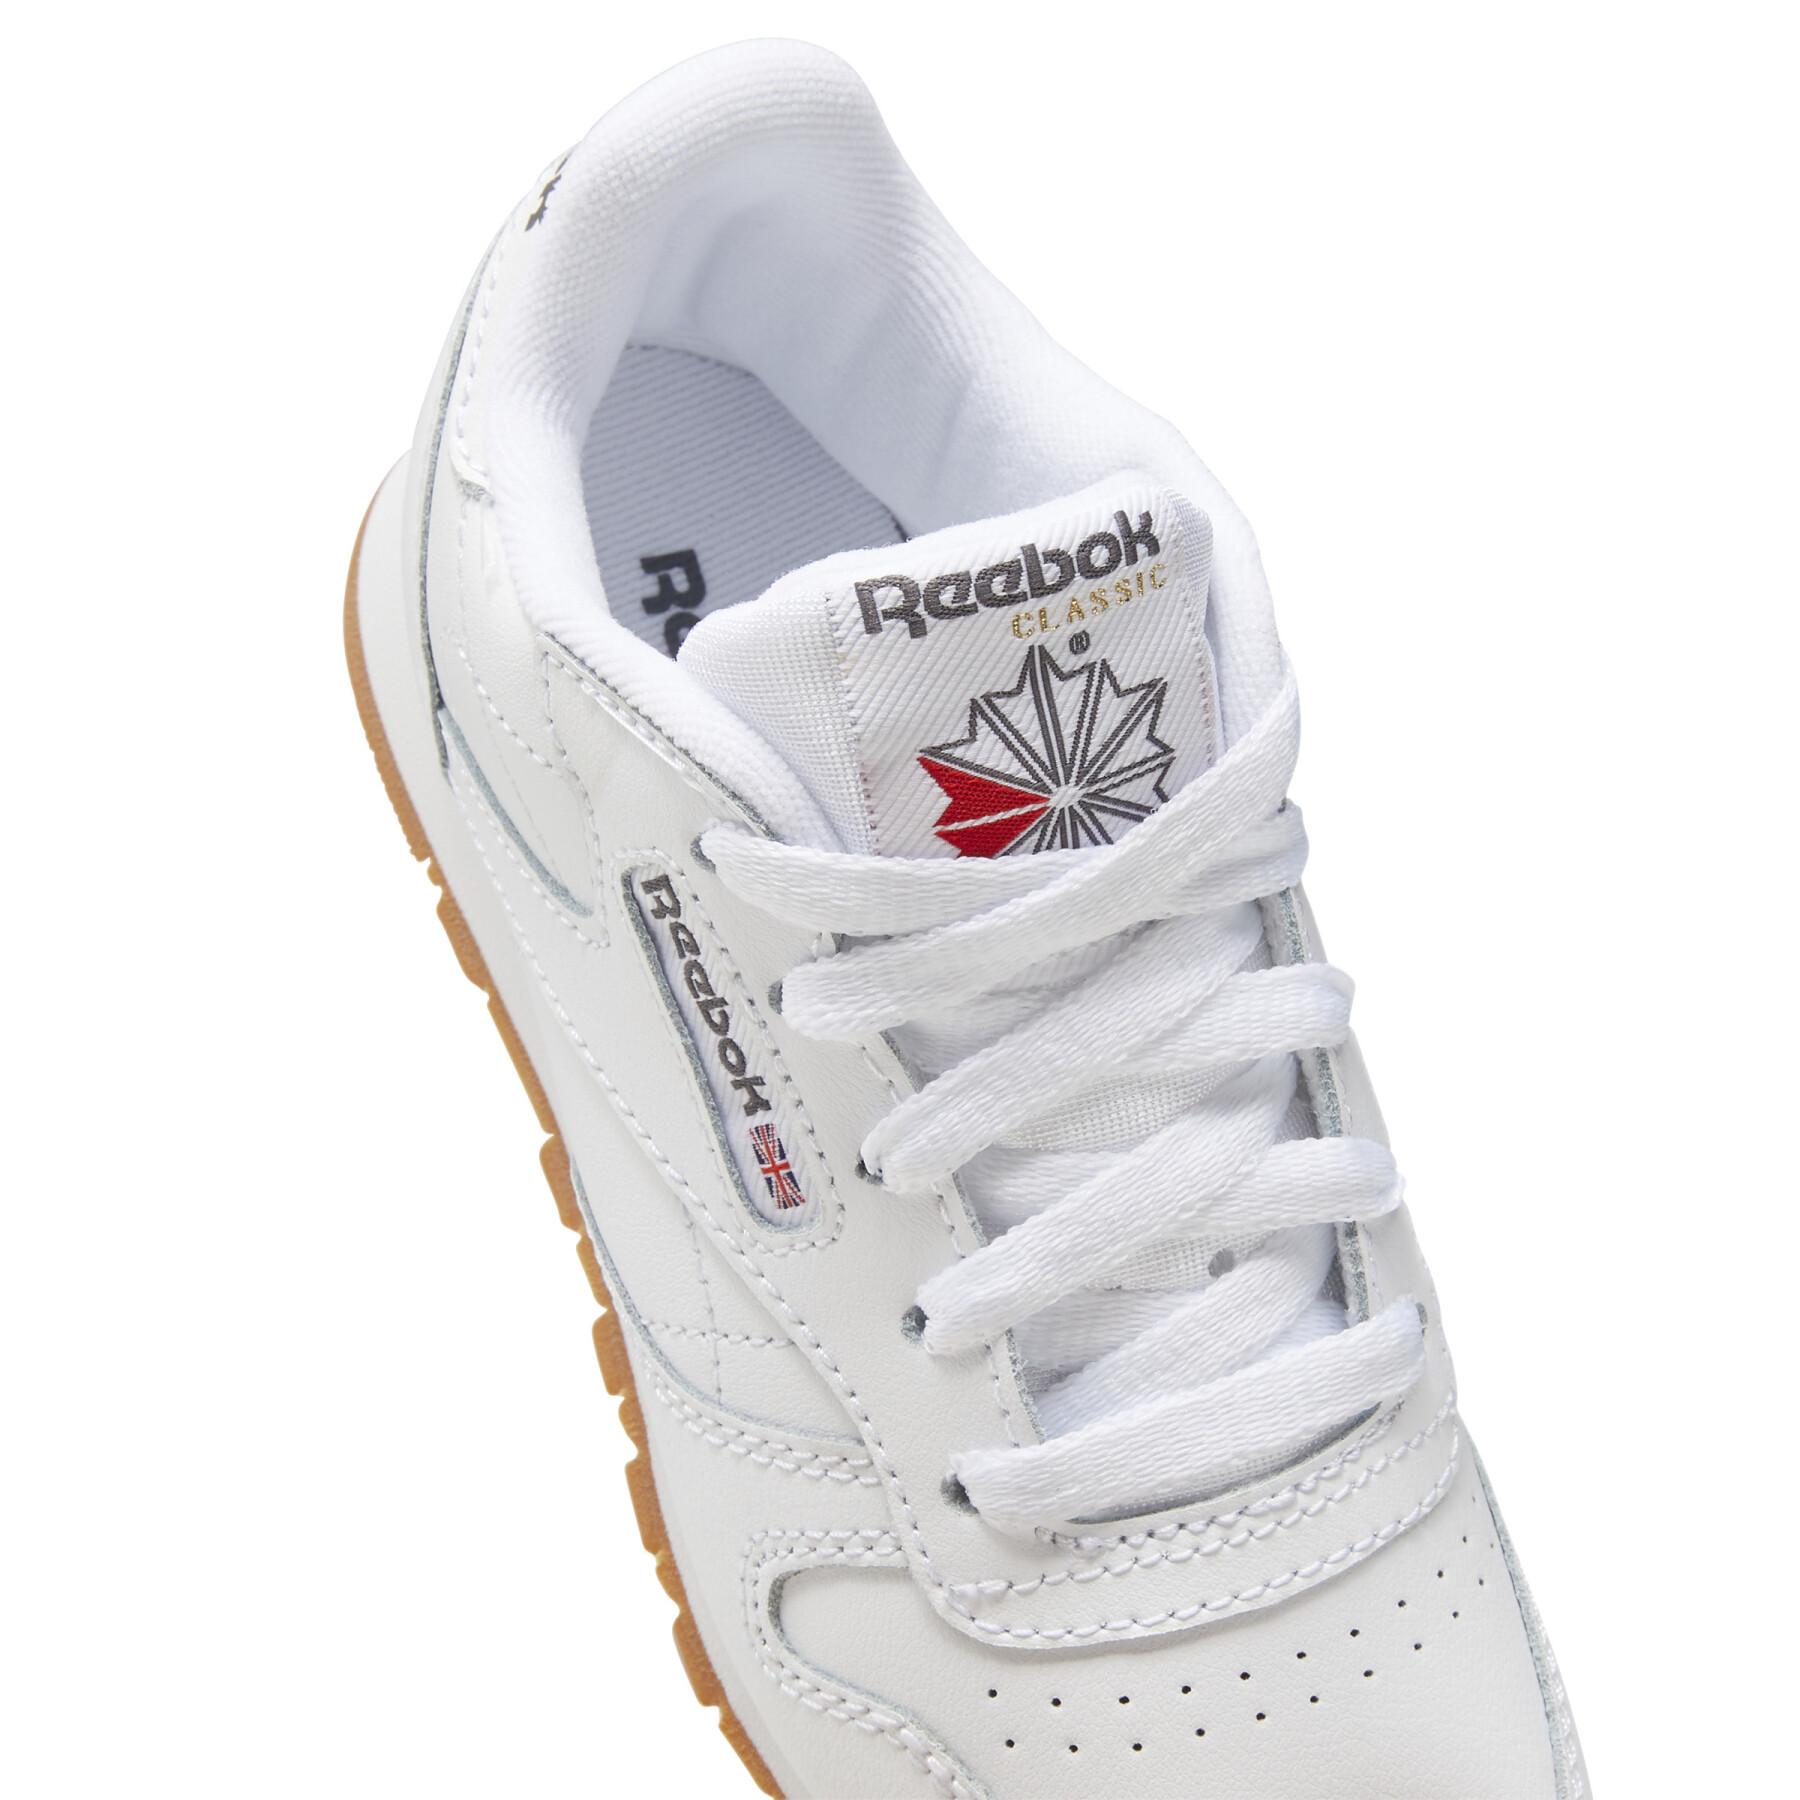 Zapatillas para niños Reebok Classic Leather